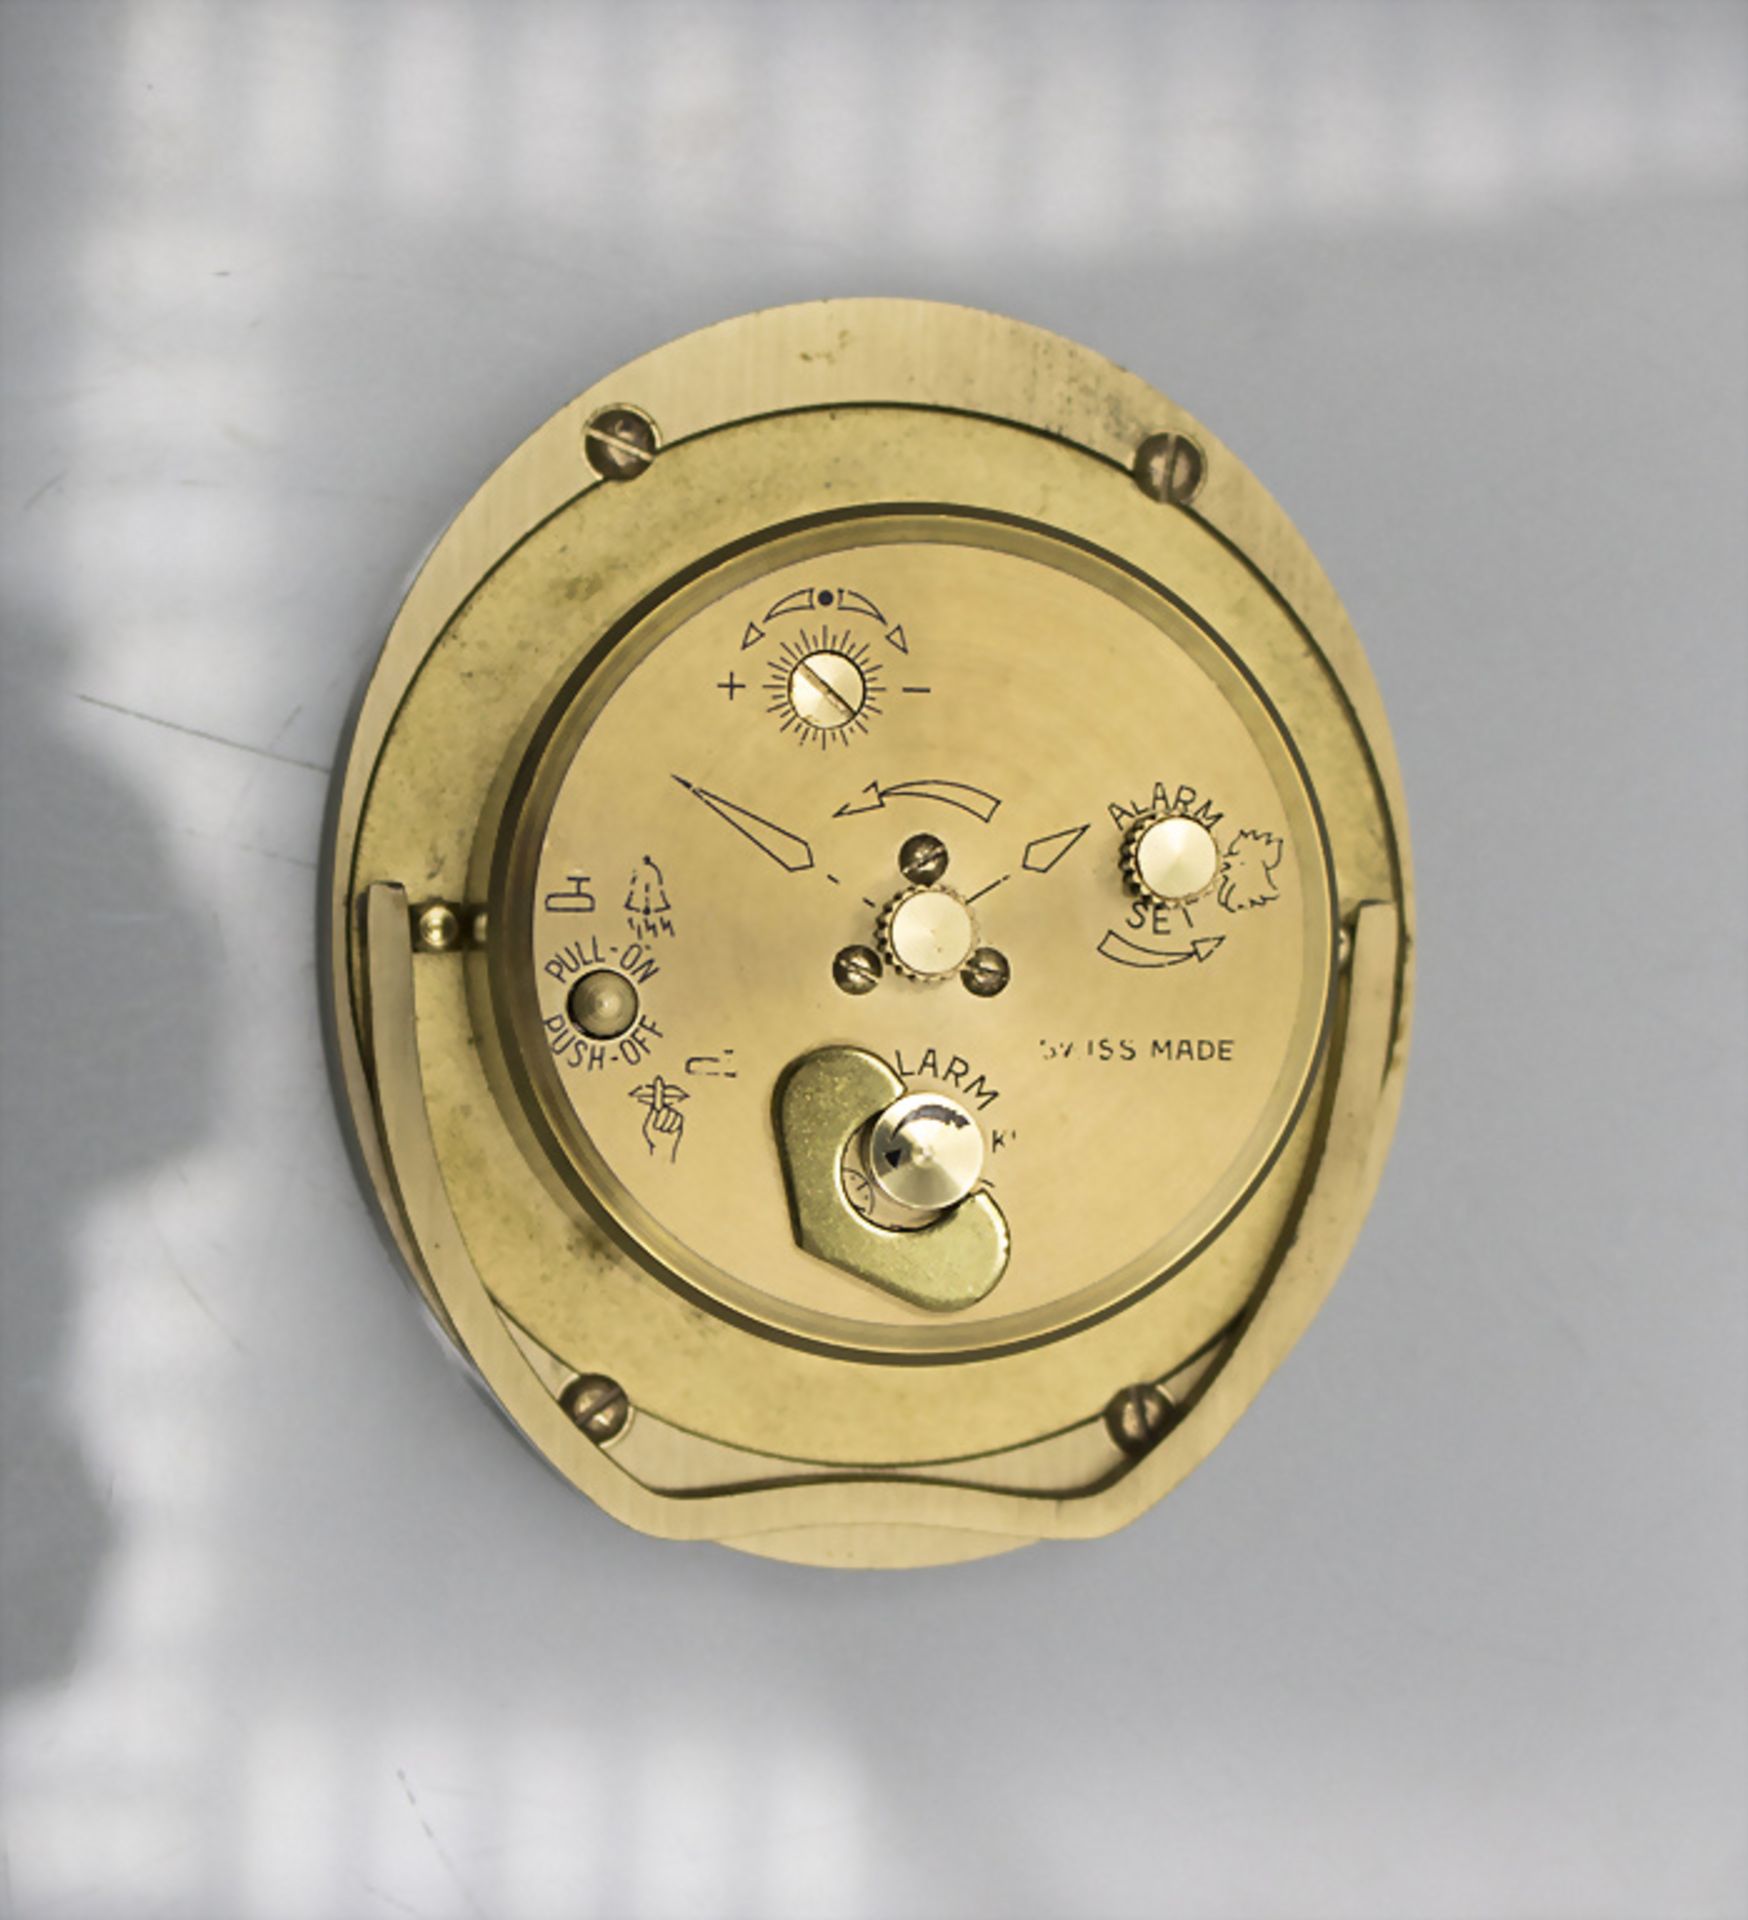 Tischuhr / A table clock, Cartier, Swiss / Schweiz, um 1960 - Image 4 of 4